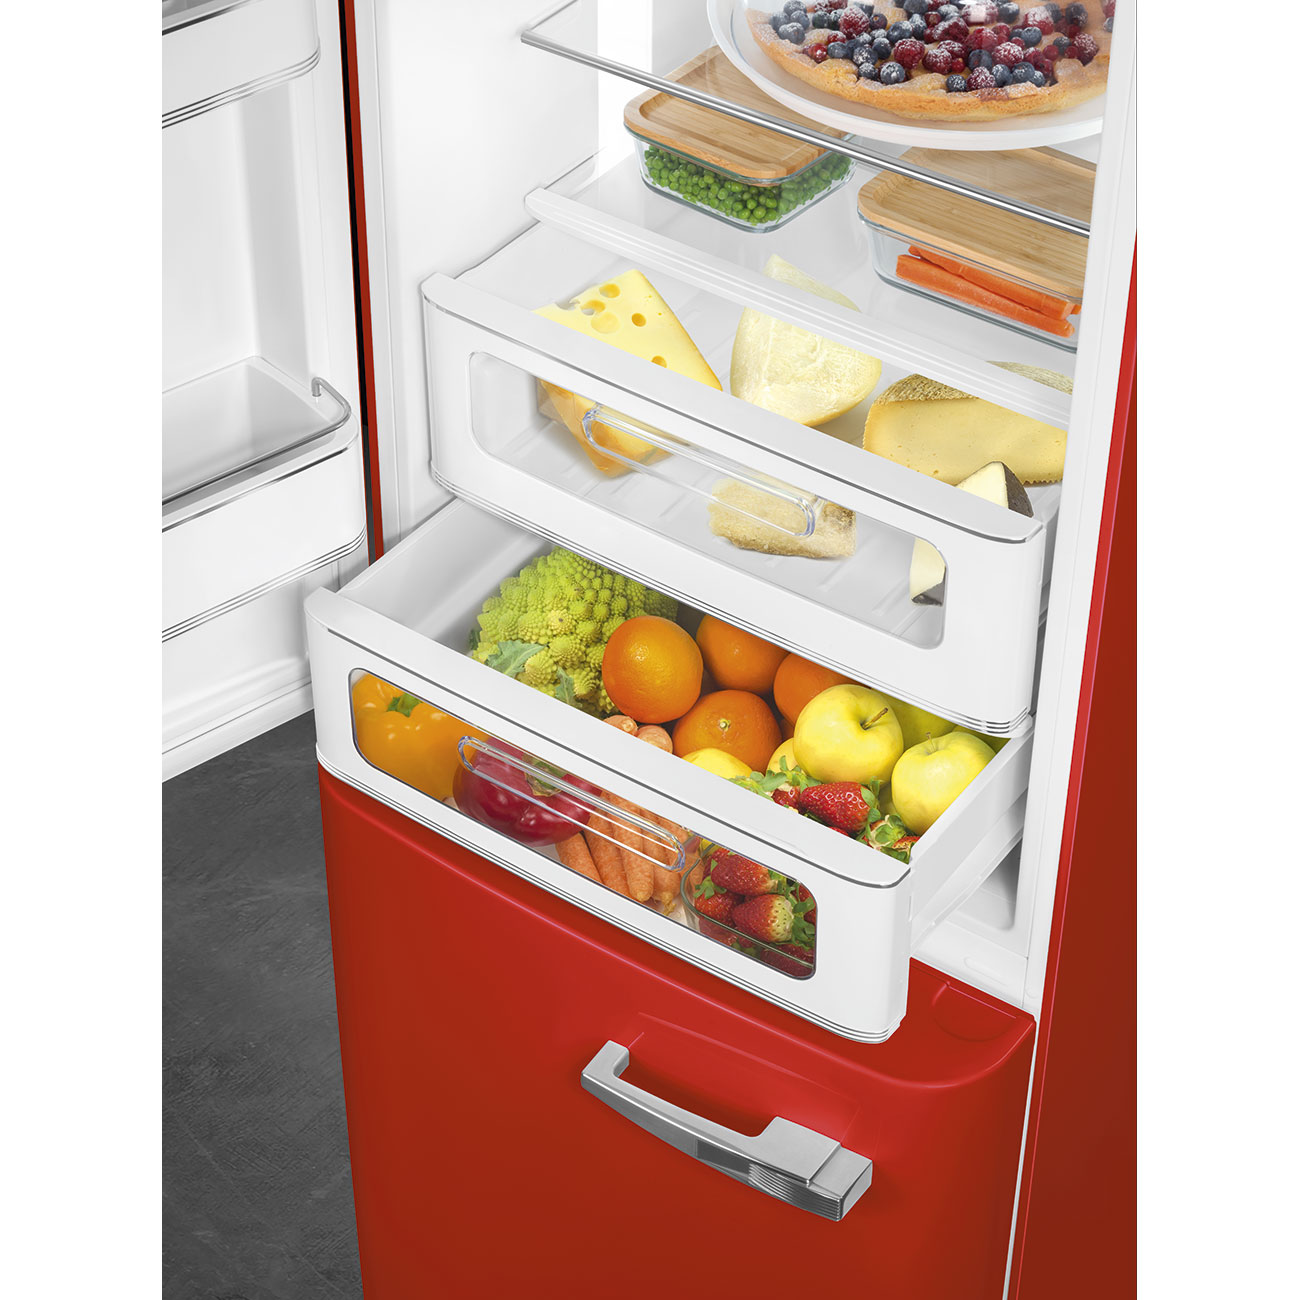 Red refrigerator - Smeg_8